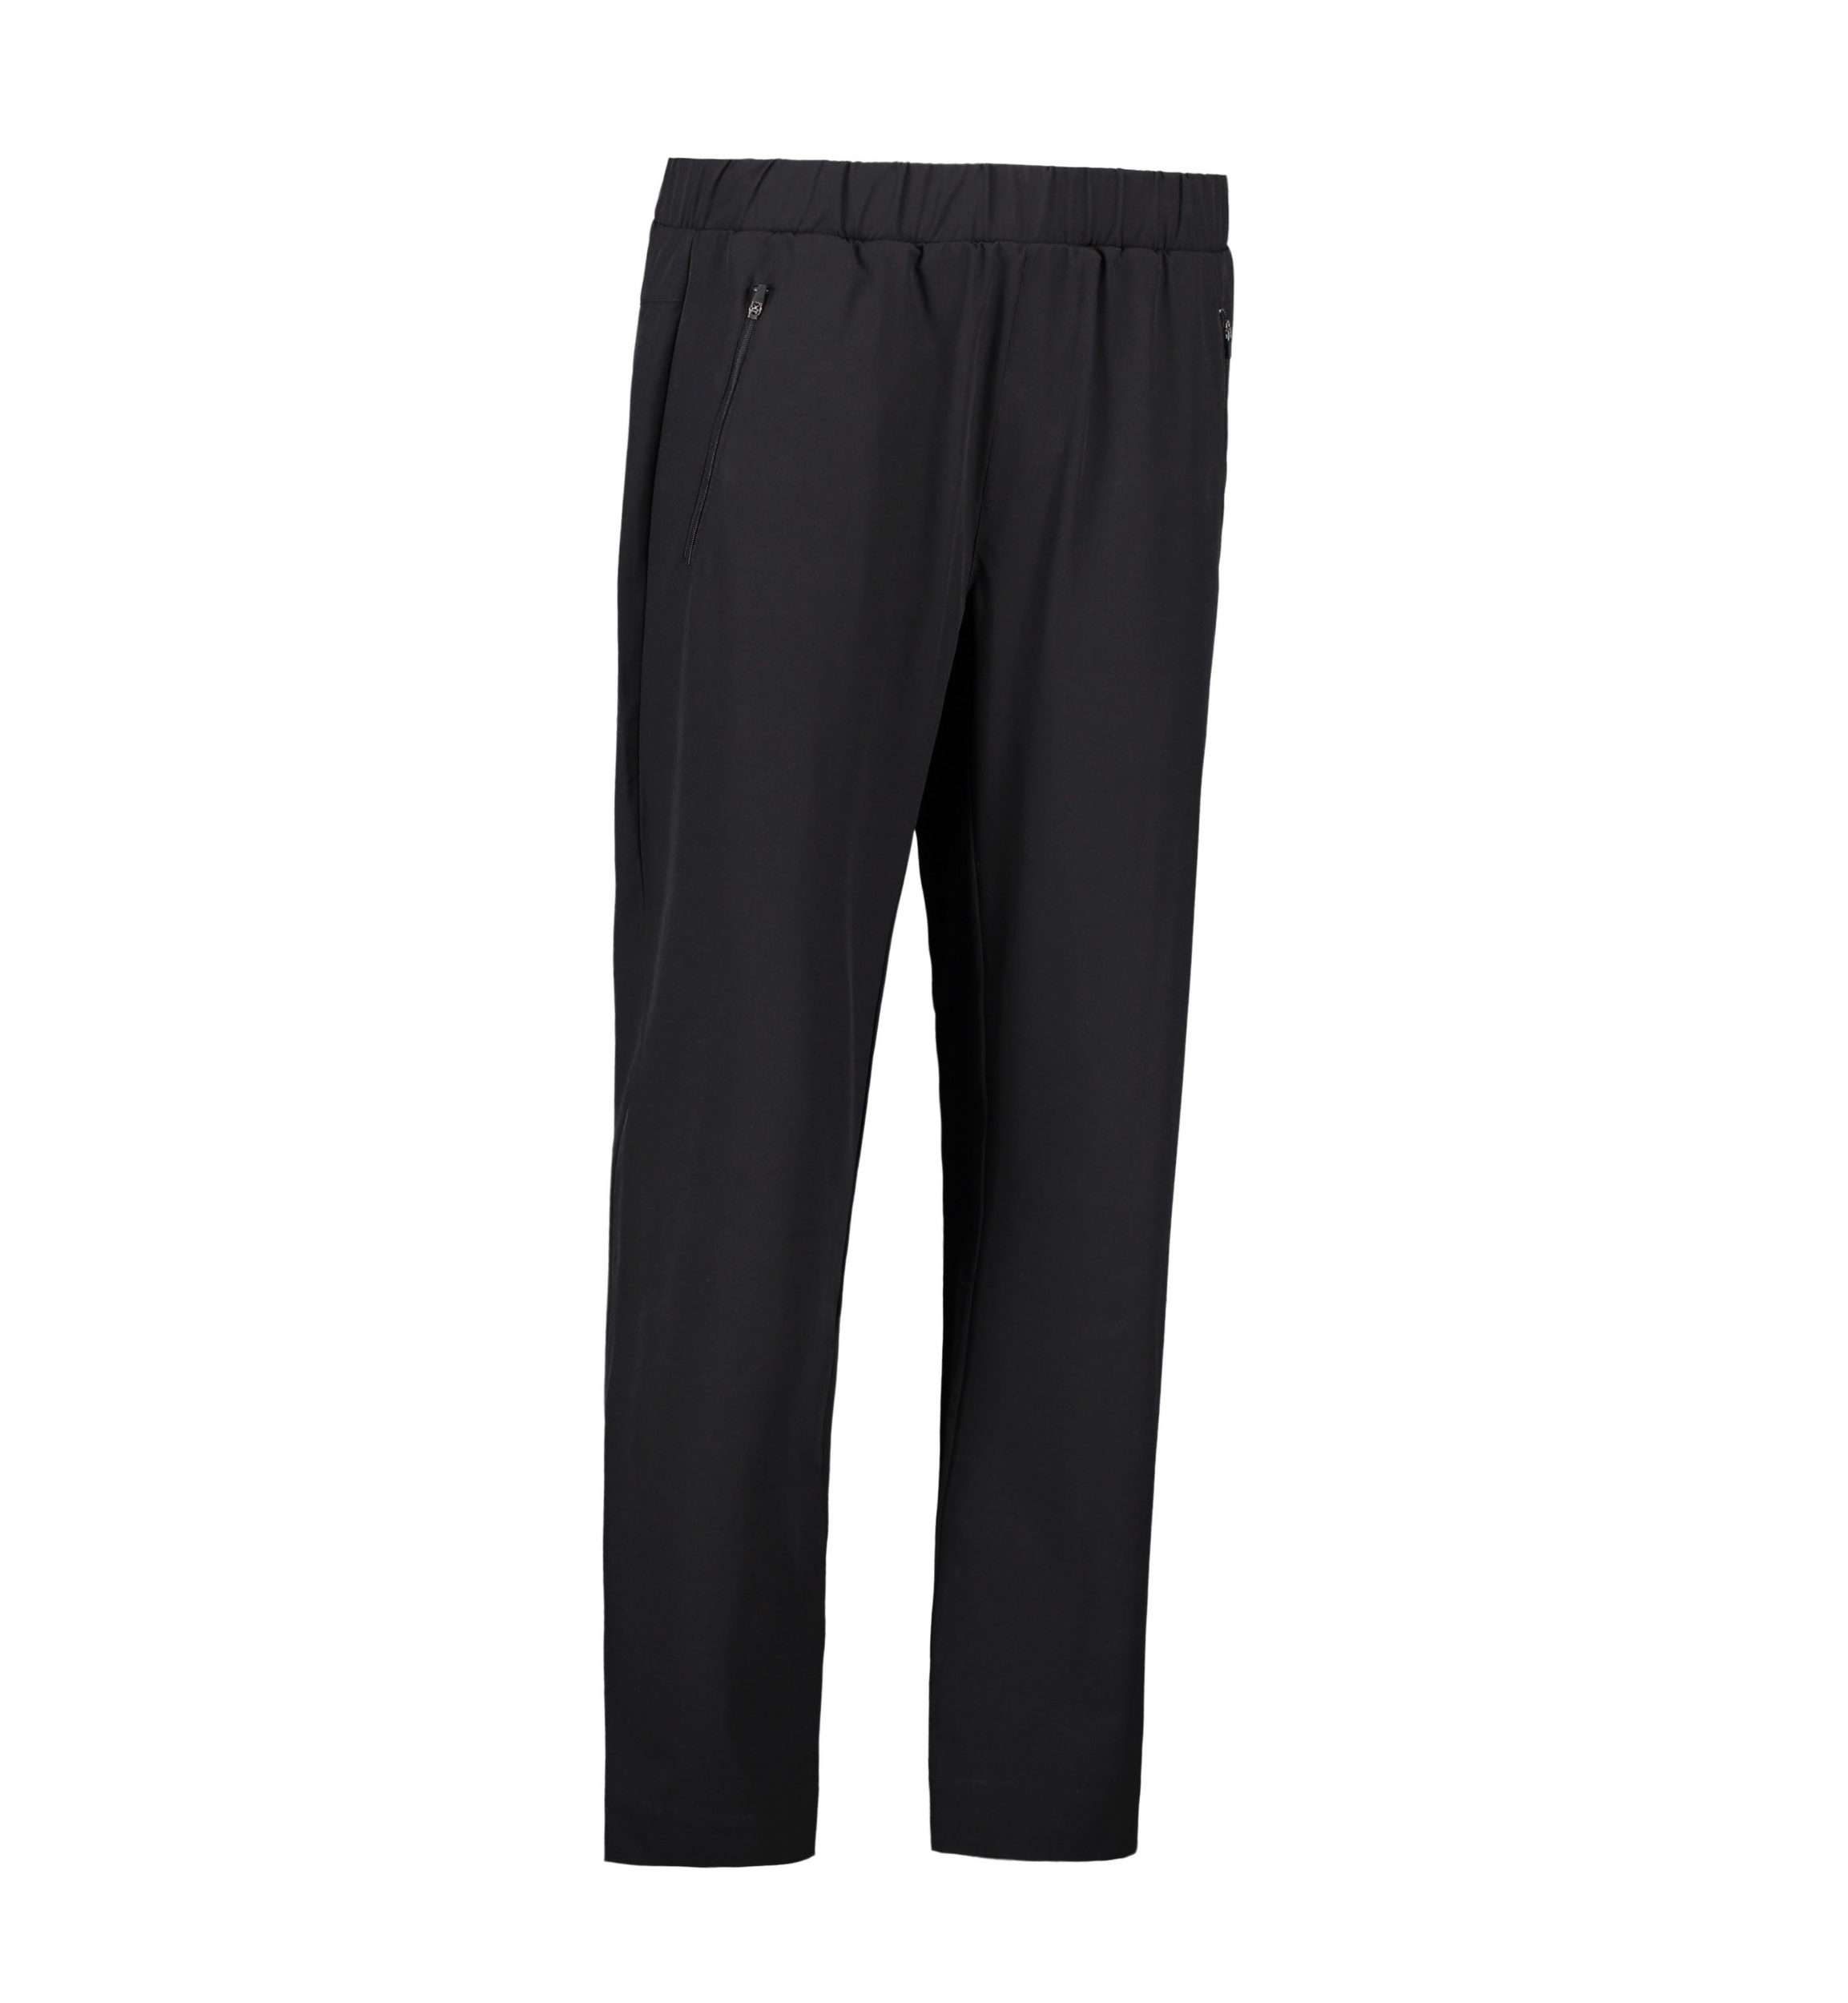 Billede af Stretch bukser til mænd i sort - 4XL hos Sygeplejebutikken.dk